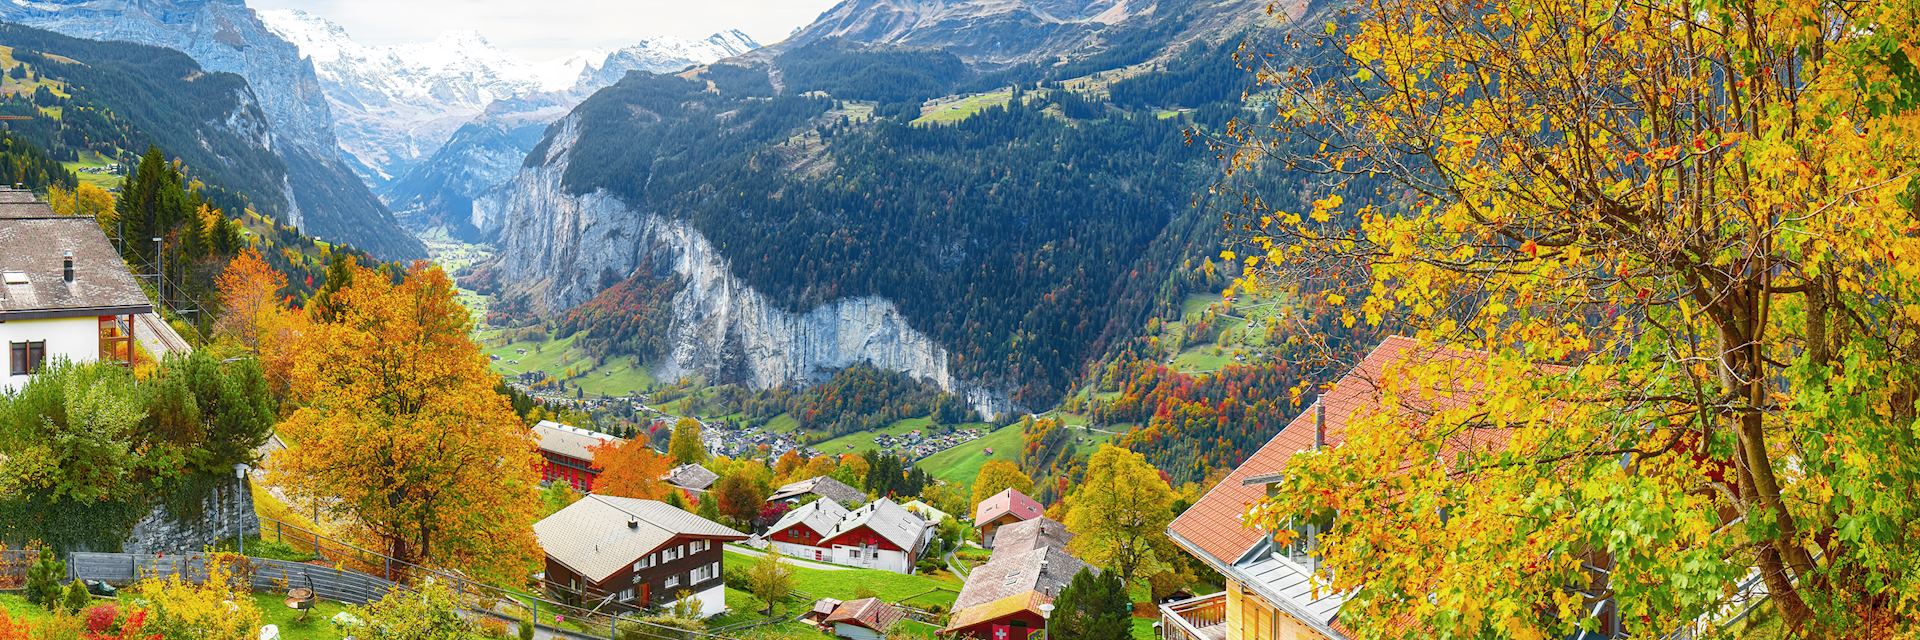 Wengen, Bernese Oberland